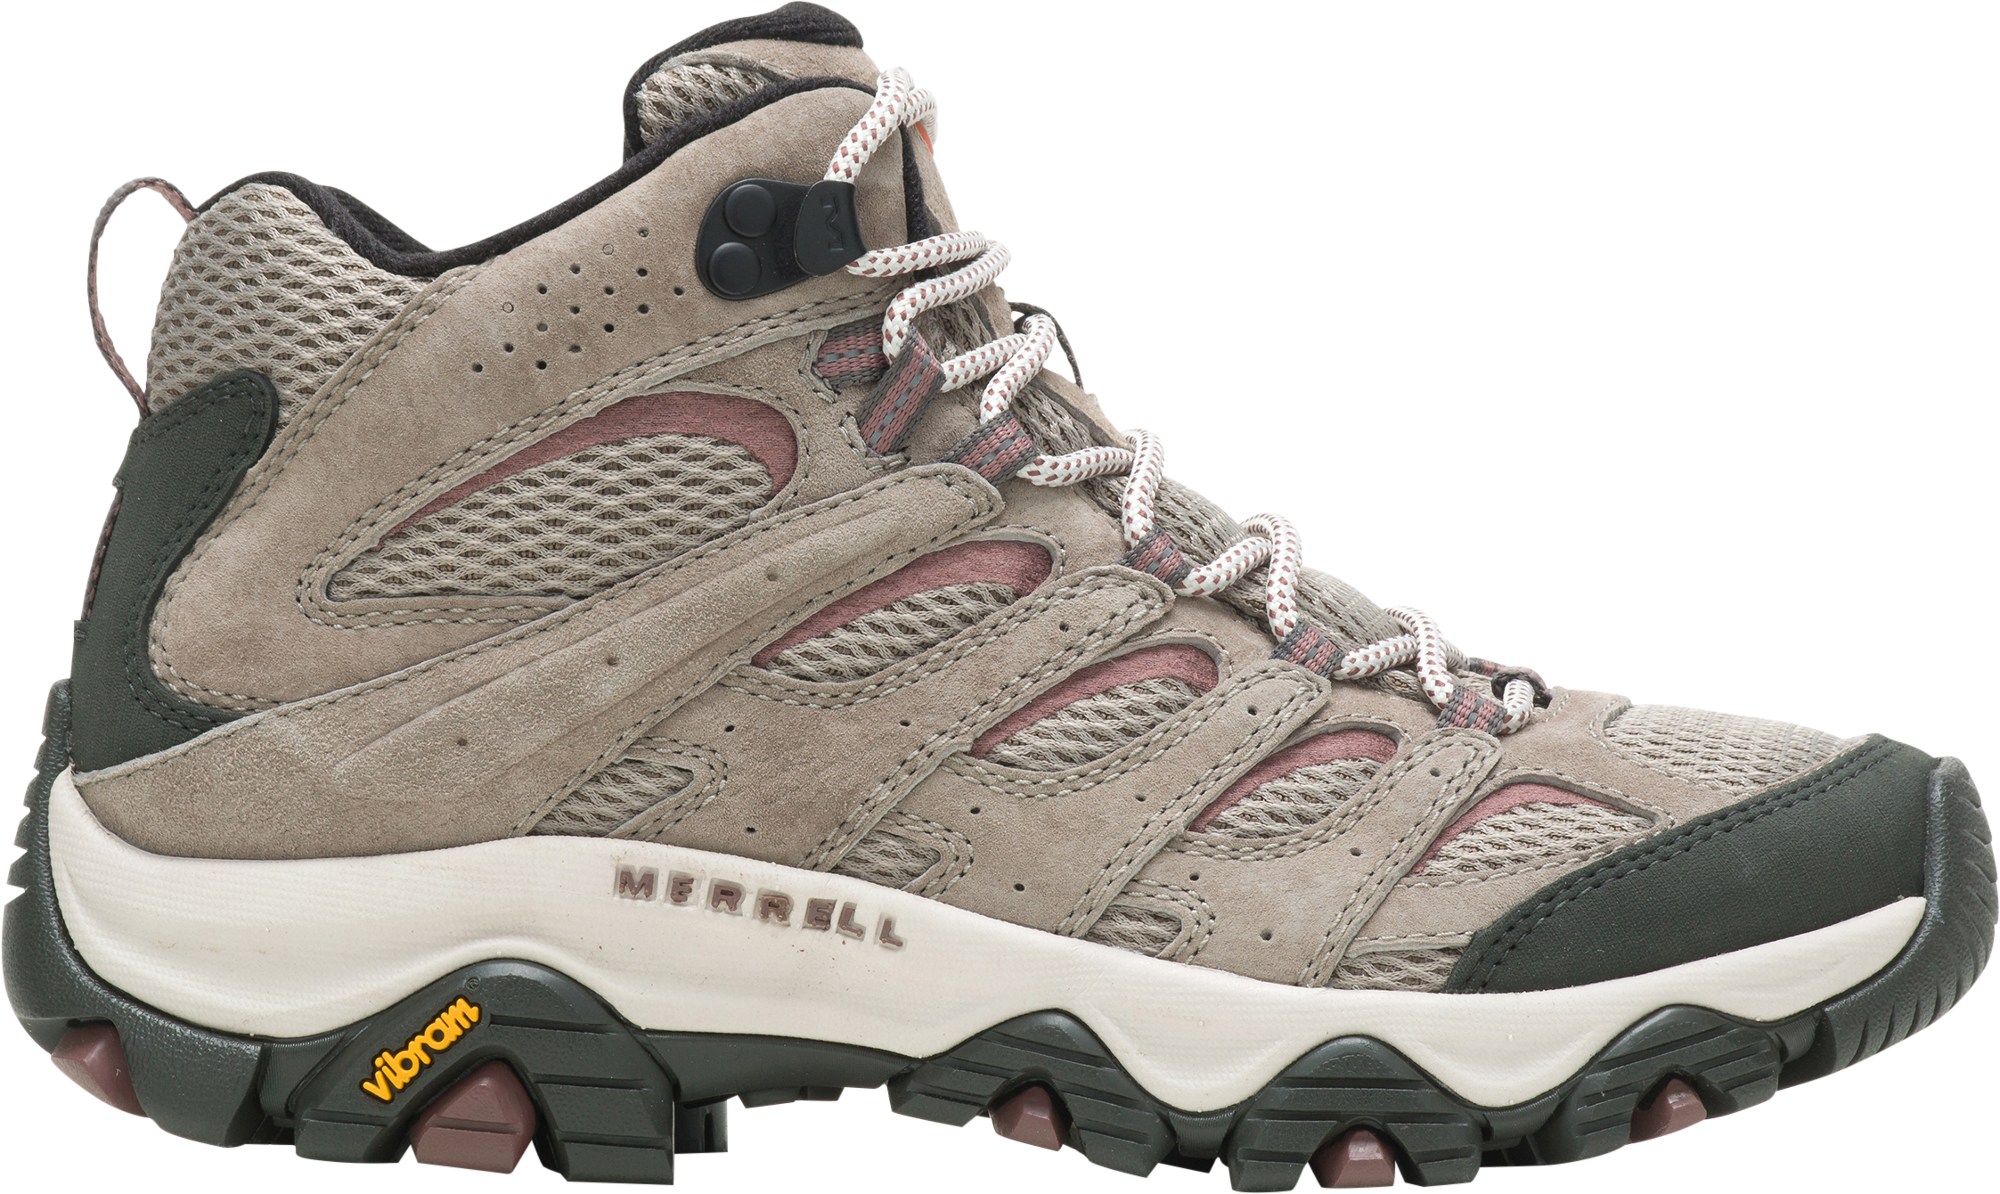 Походные ботинки Moab 3 Mid — женские Merrell, серый